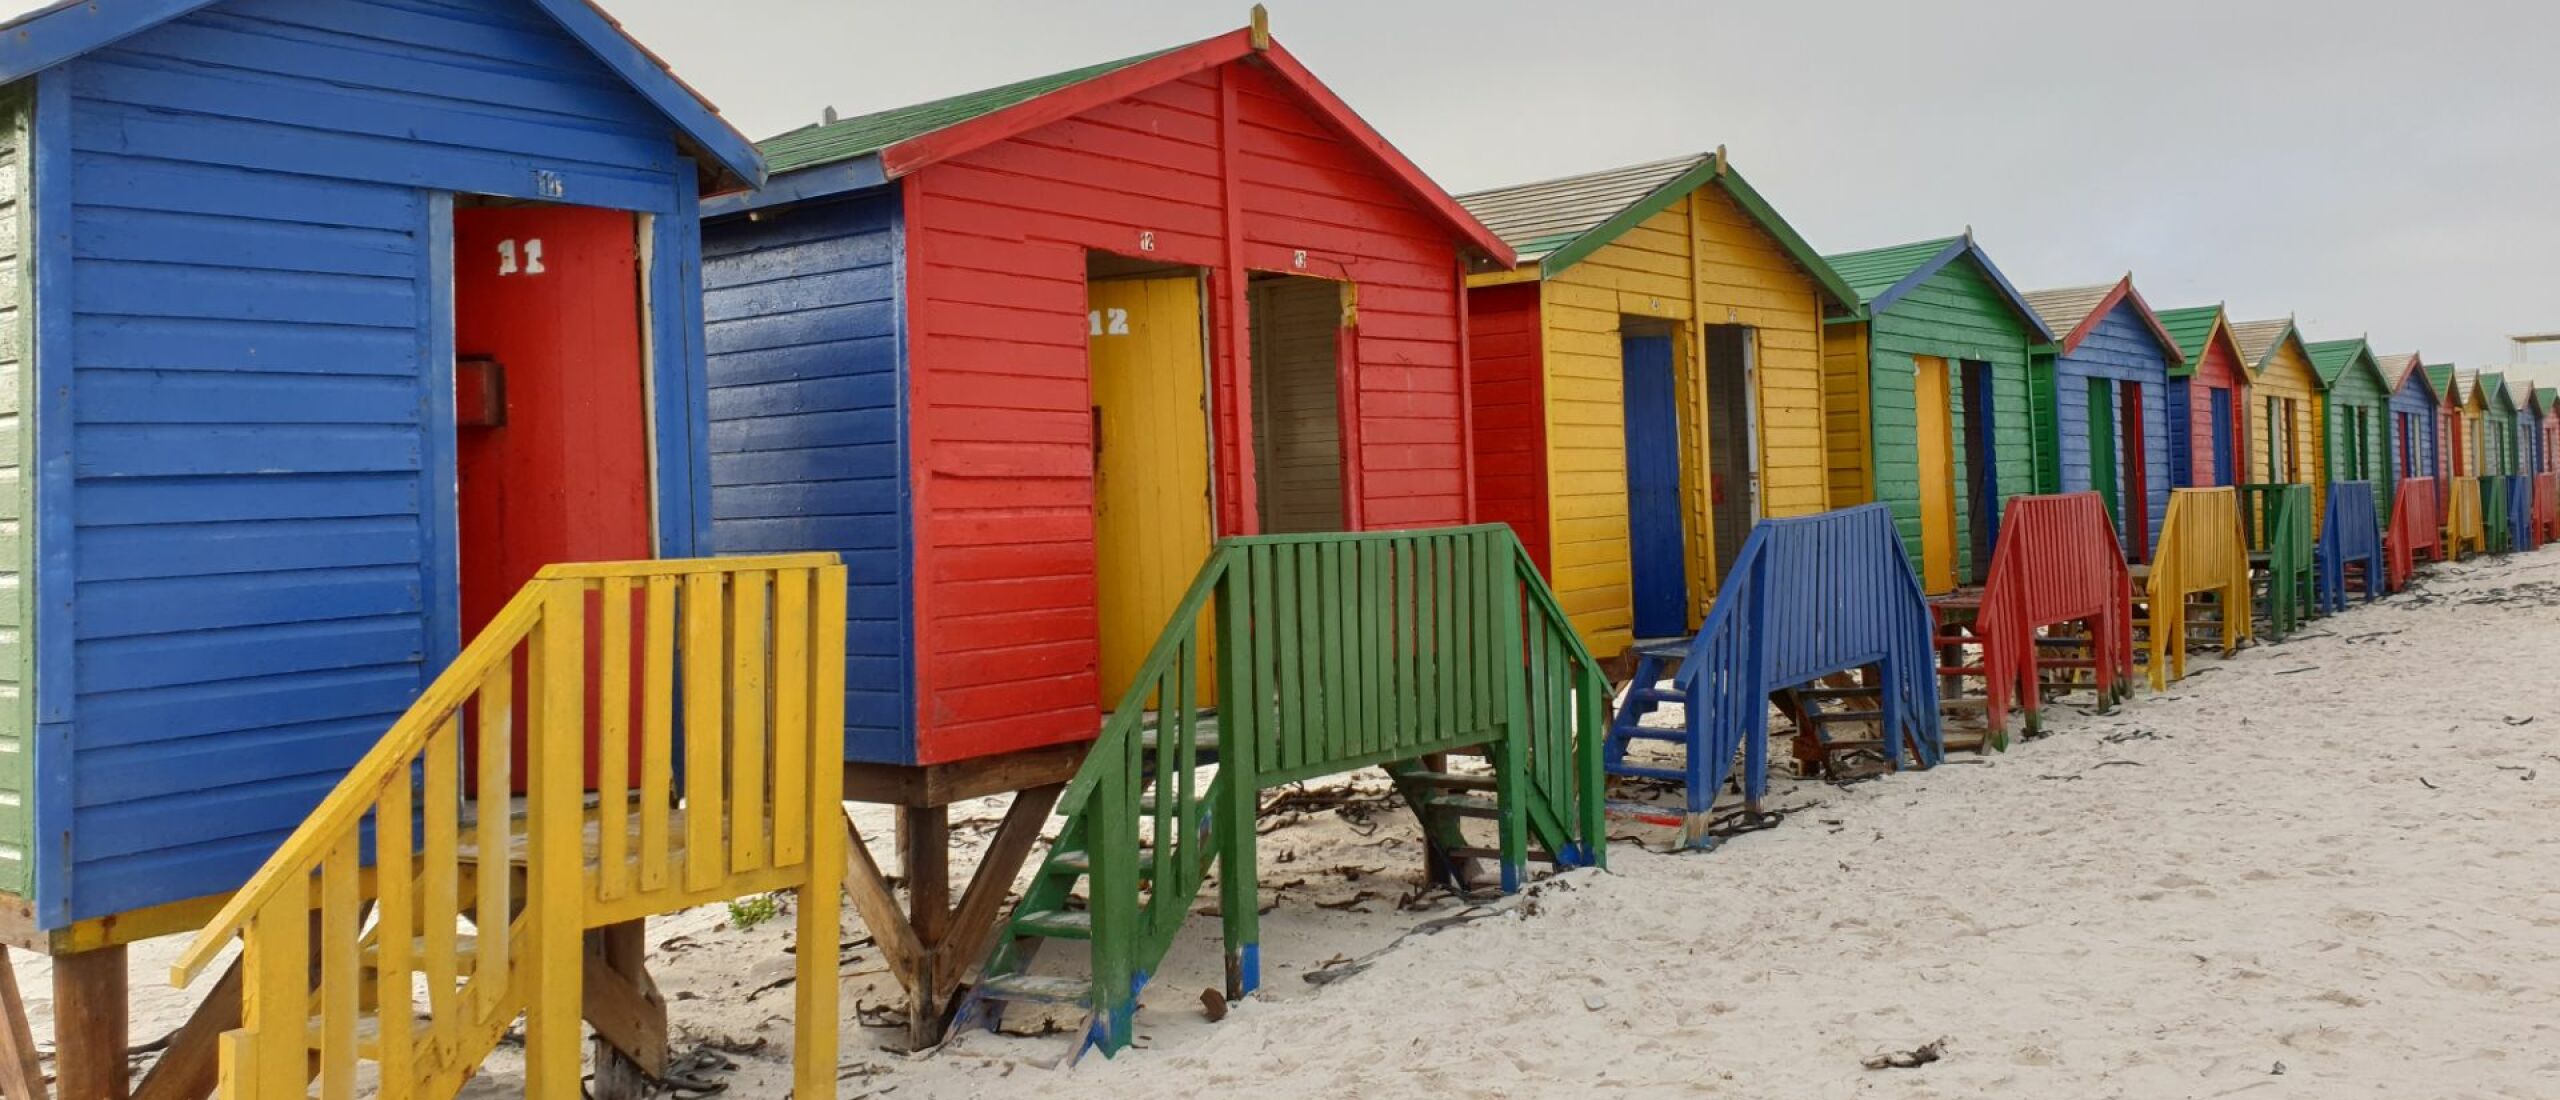 Muizenberg beach bij Kaapstad.